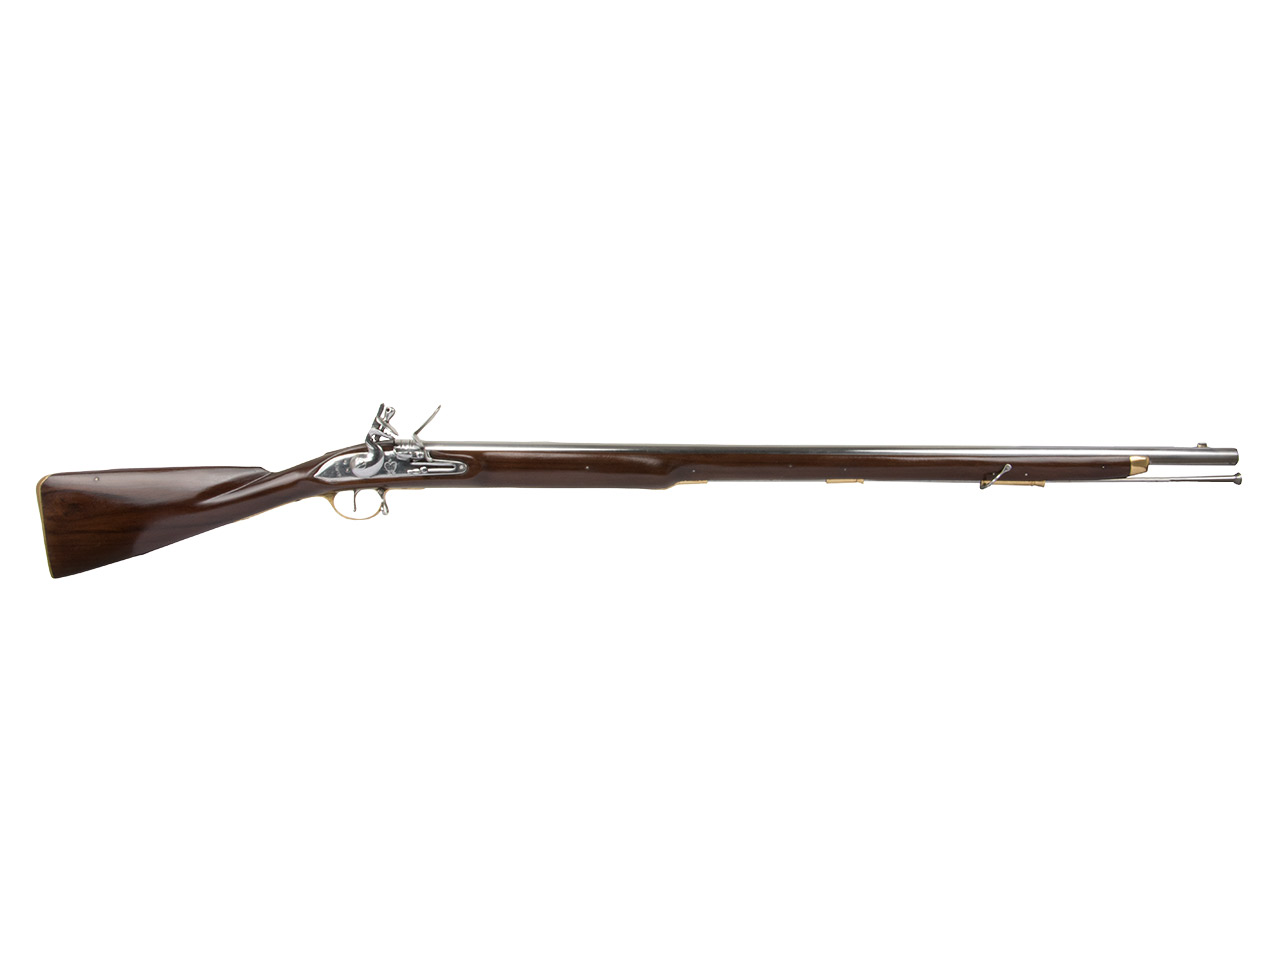 Vorderlader Steinschlossgewehr Brown Bess India Pattern Musket  Kaliber .75 bzw. 19 mm (P18)